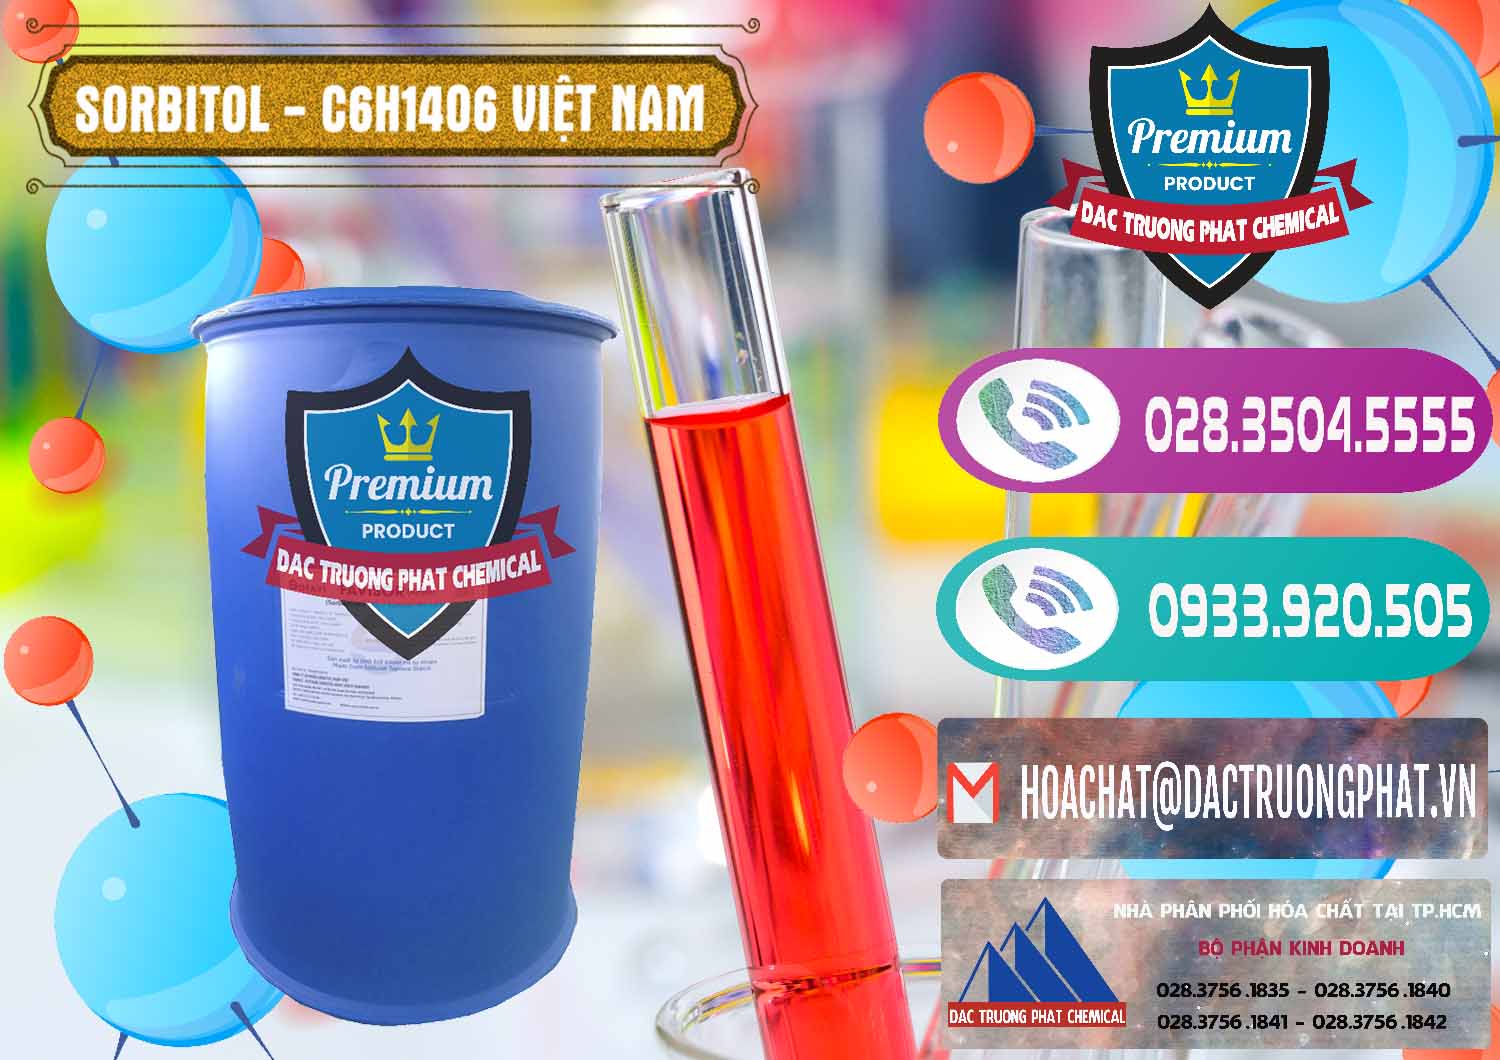 Cty phân phối và kinh doanh Sorbitol - C6H14O6 Lỏng 70% Food Grade Việt Nam - 0438 - Cty chuyên bán và cung cấp hóa chất tại TP.HCM - hoachatxulynuoc.com